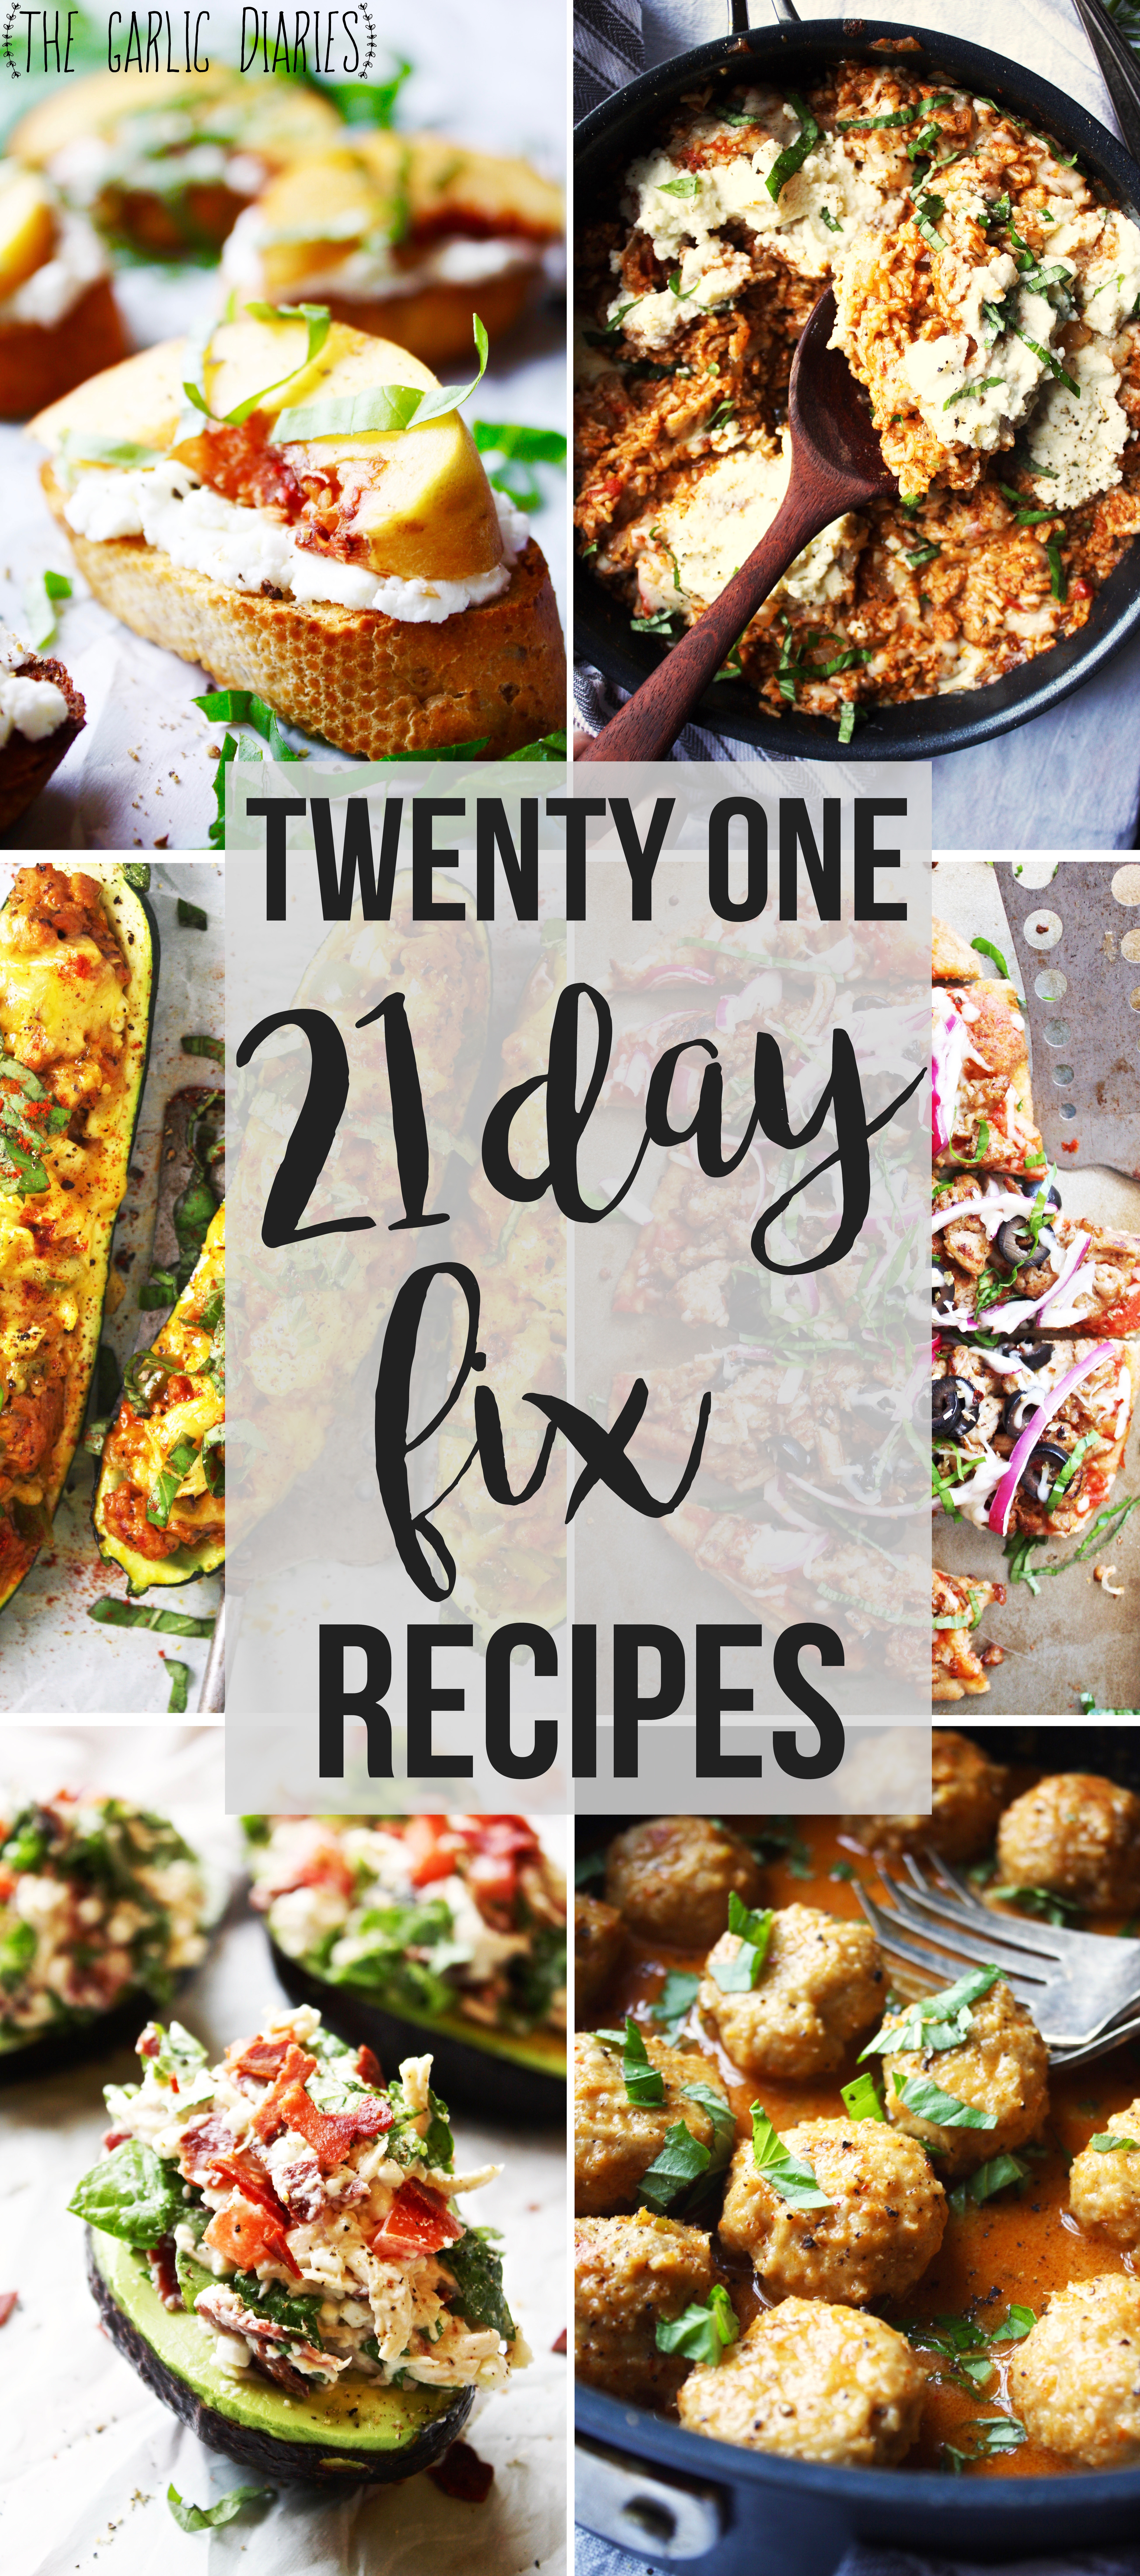 Twenty One 21 Day Fix Recipes